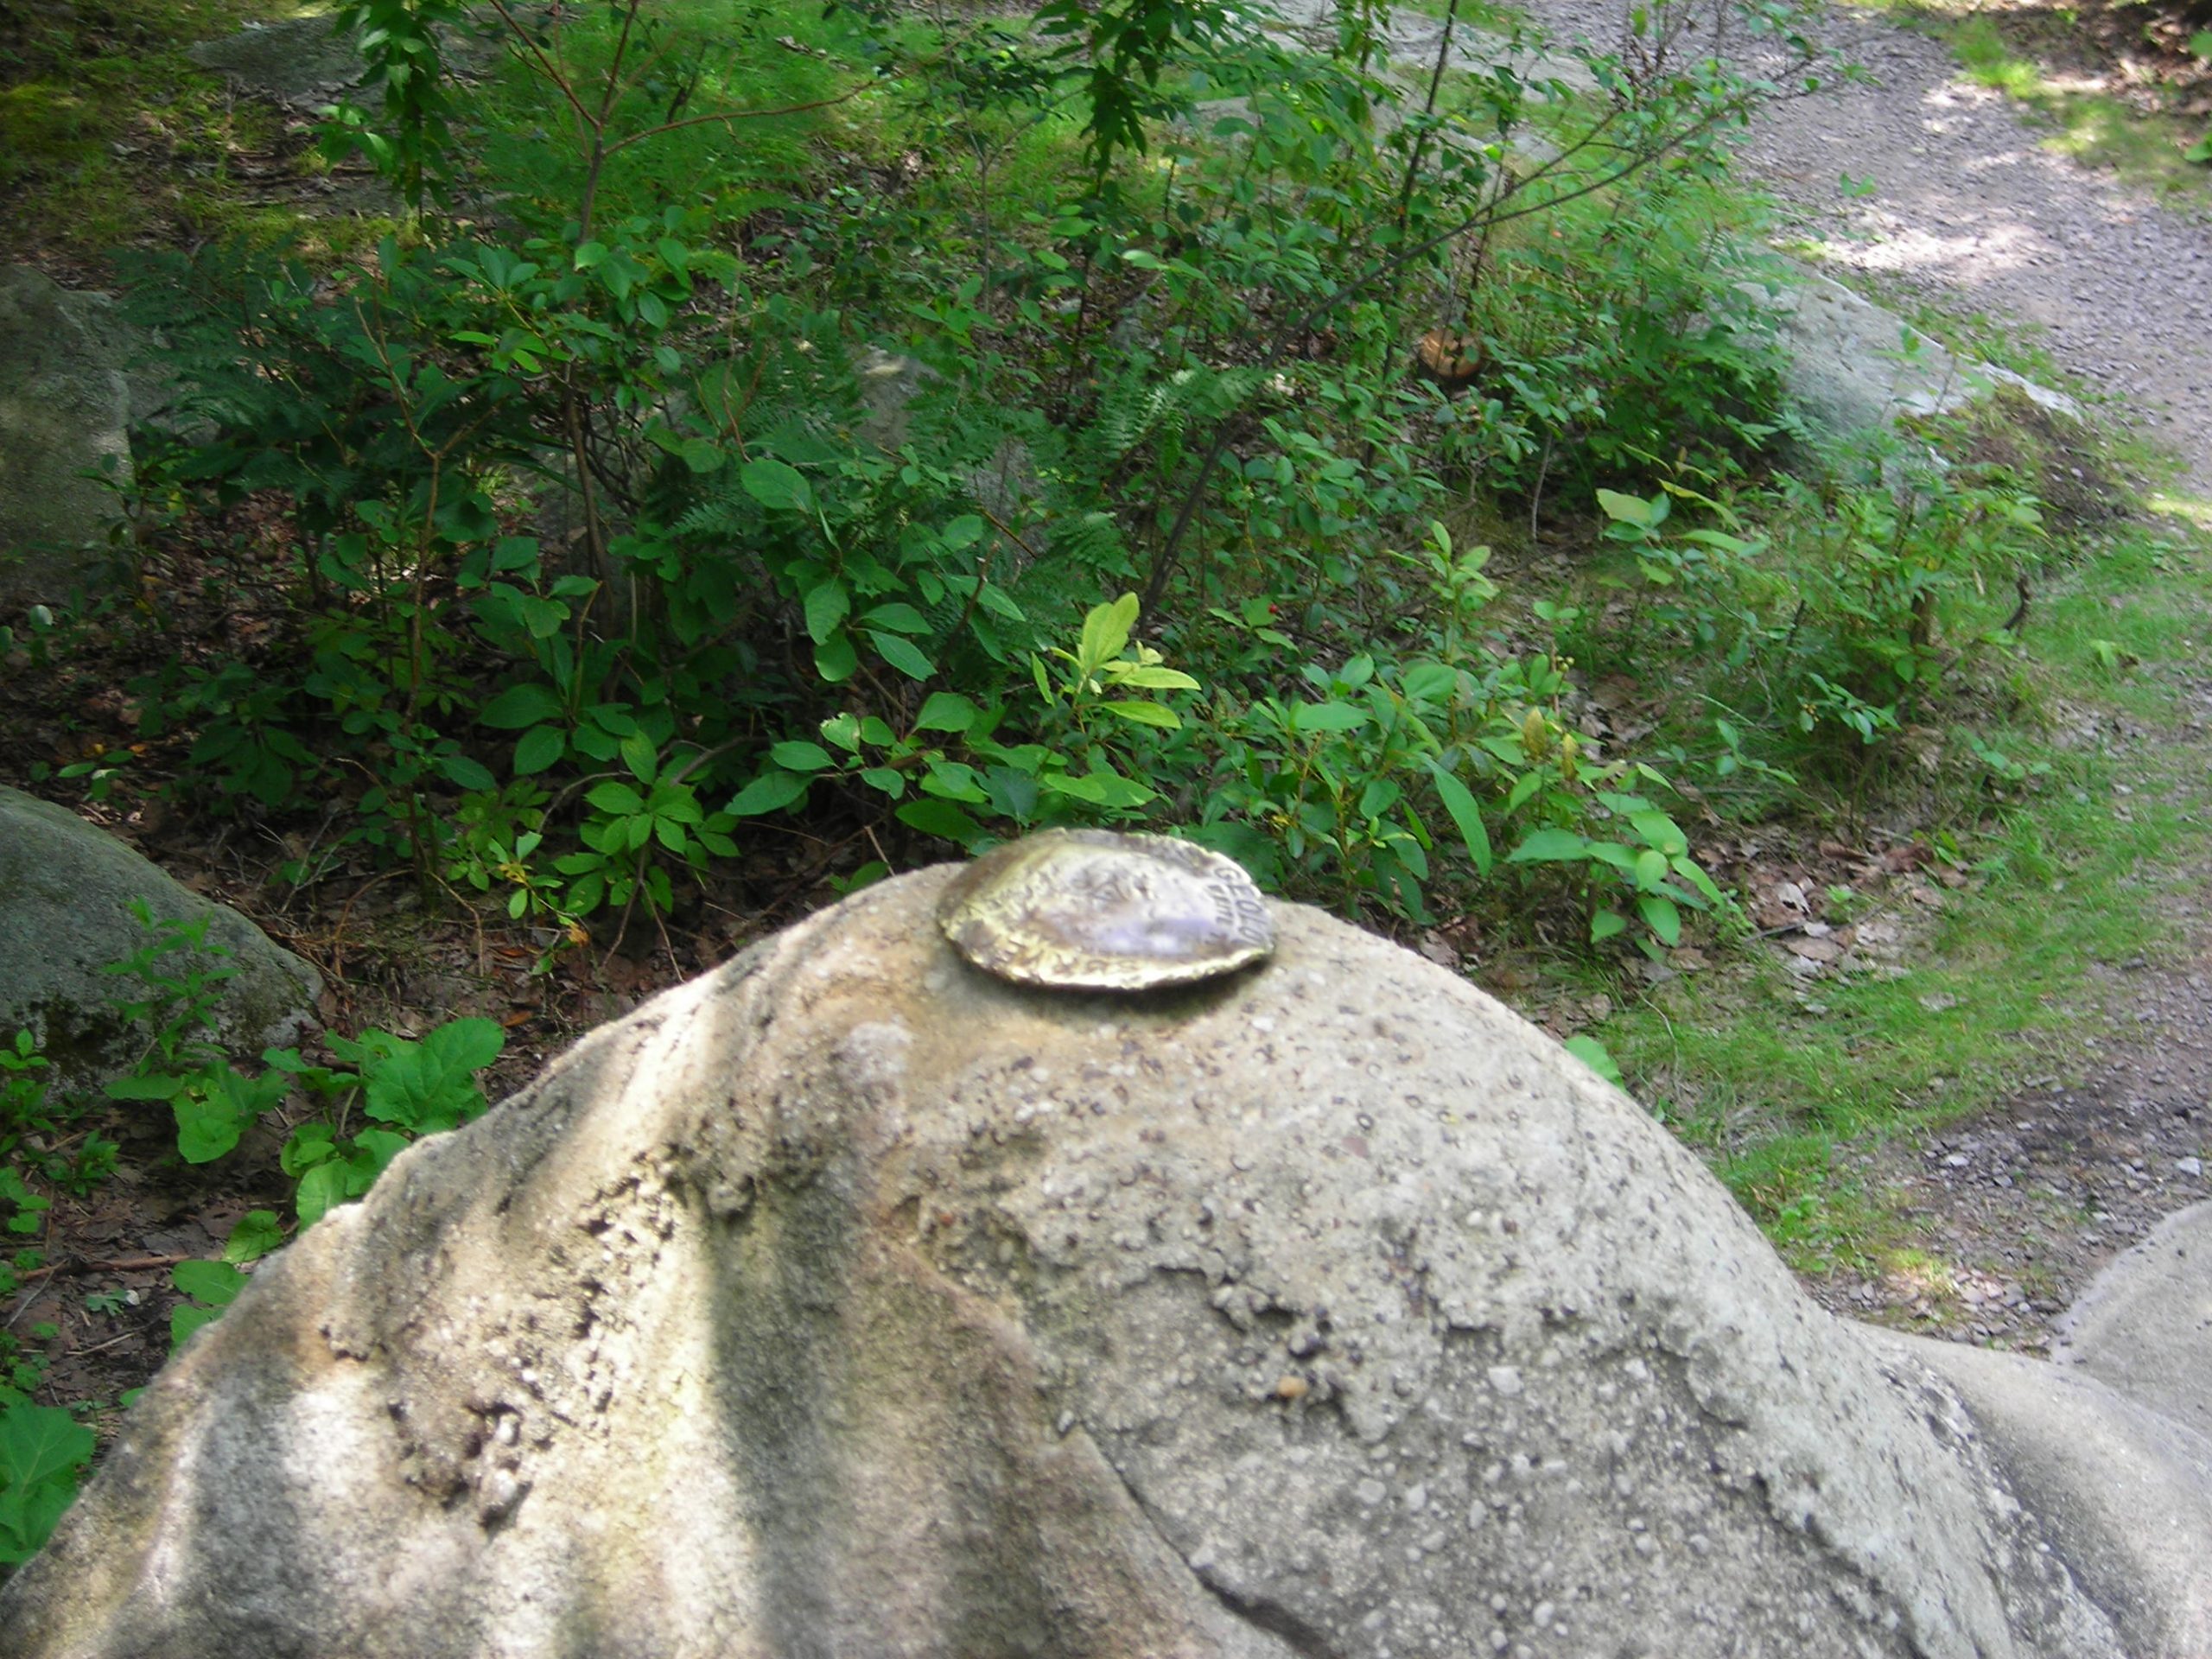 A survey datum marker on a rock.